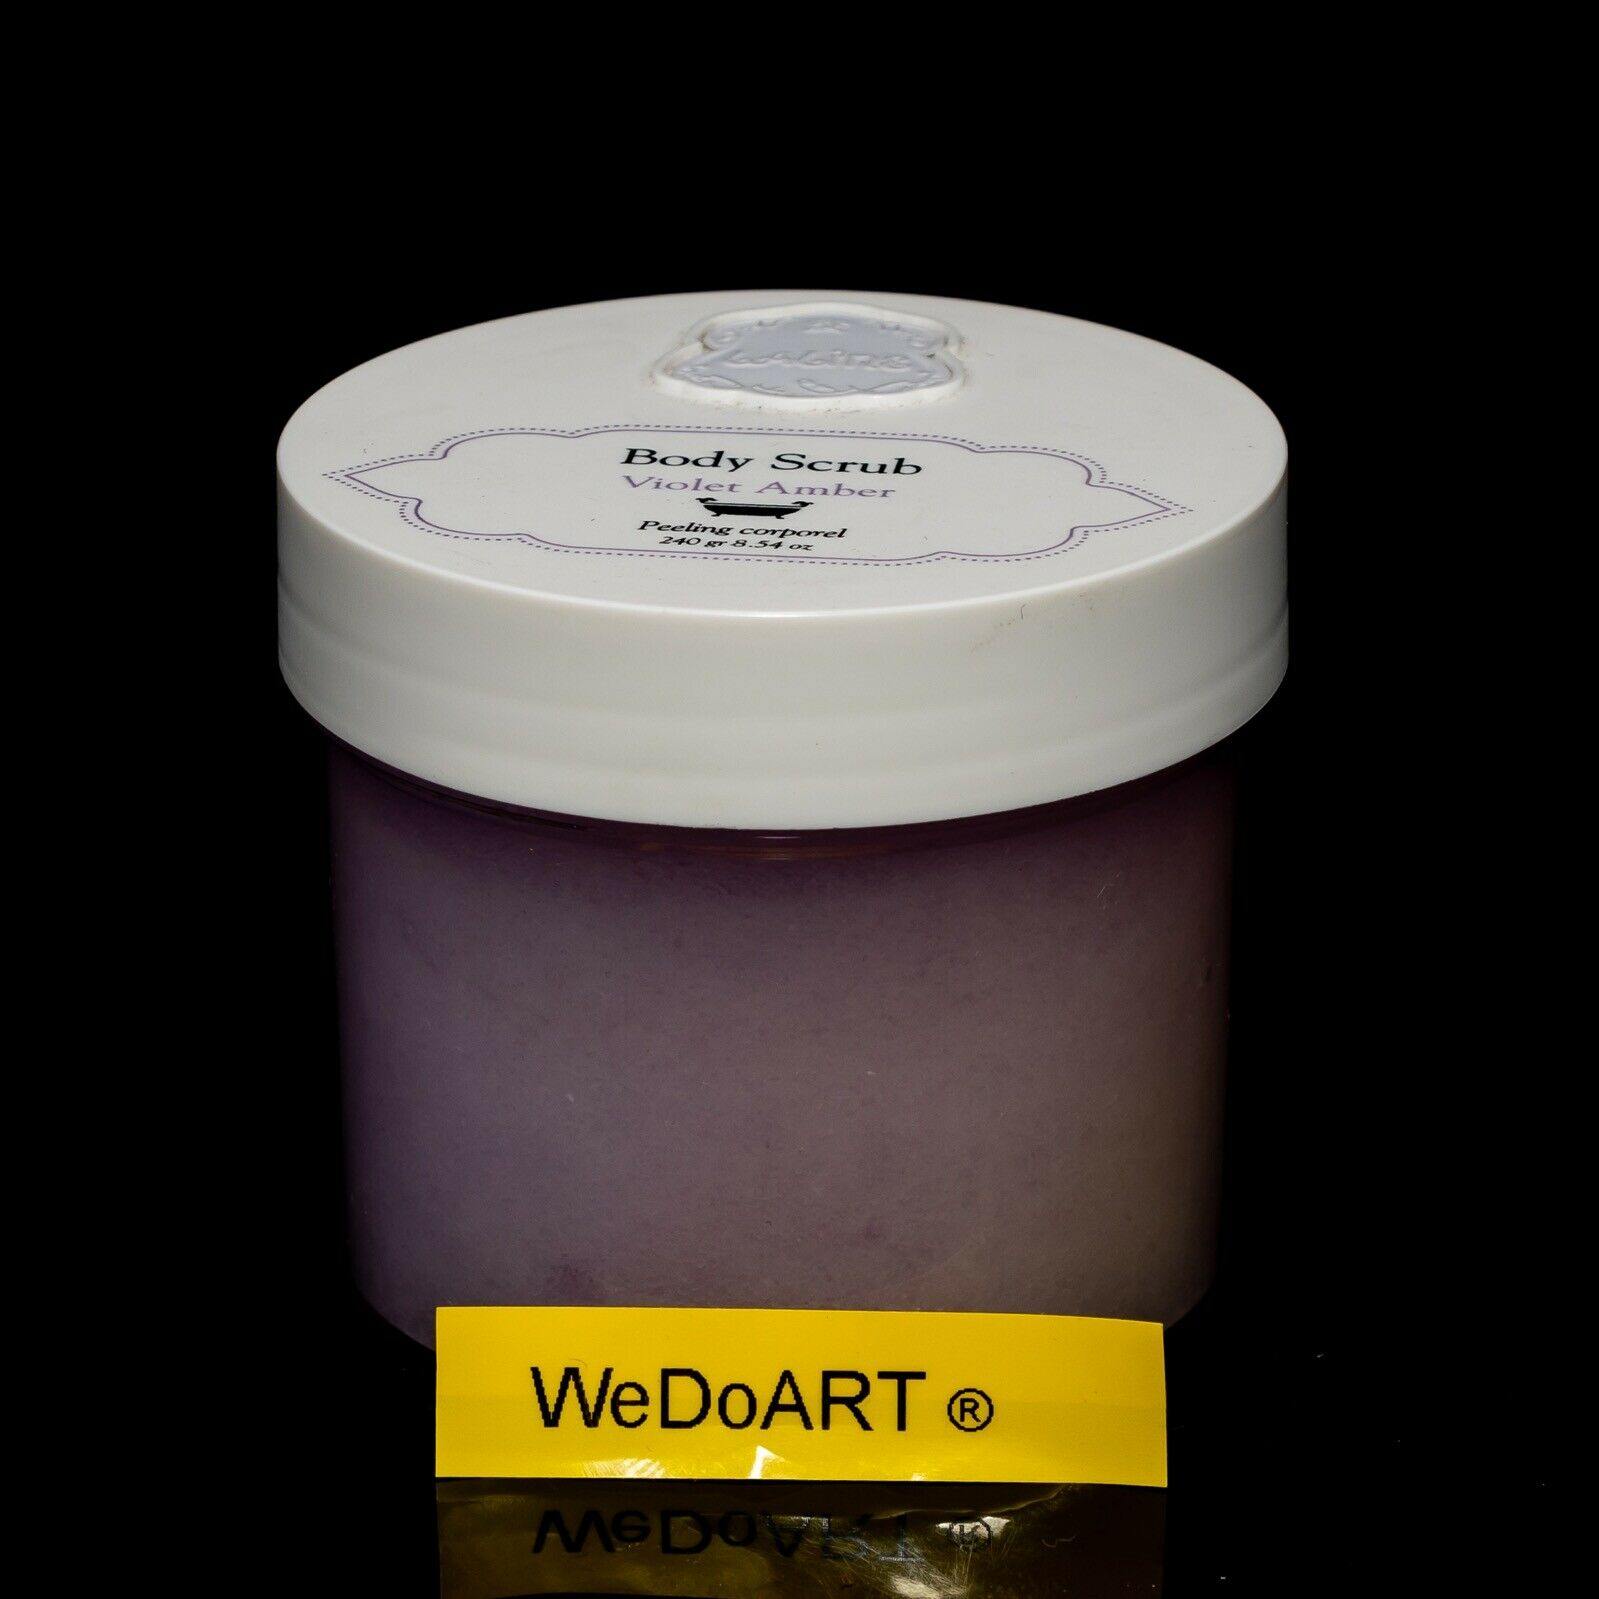 Laline body scrub Violet Amber 240g - 8.54oz - WEDOART-IL